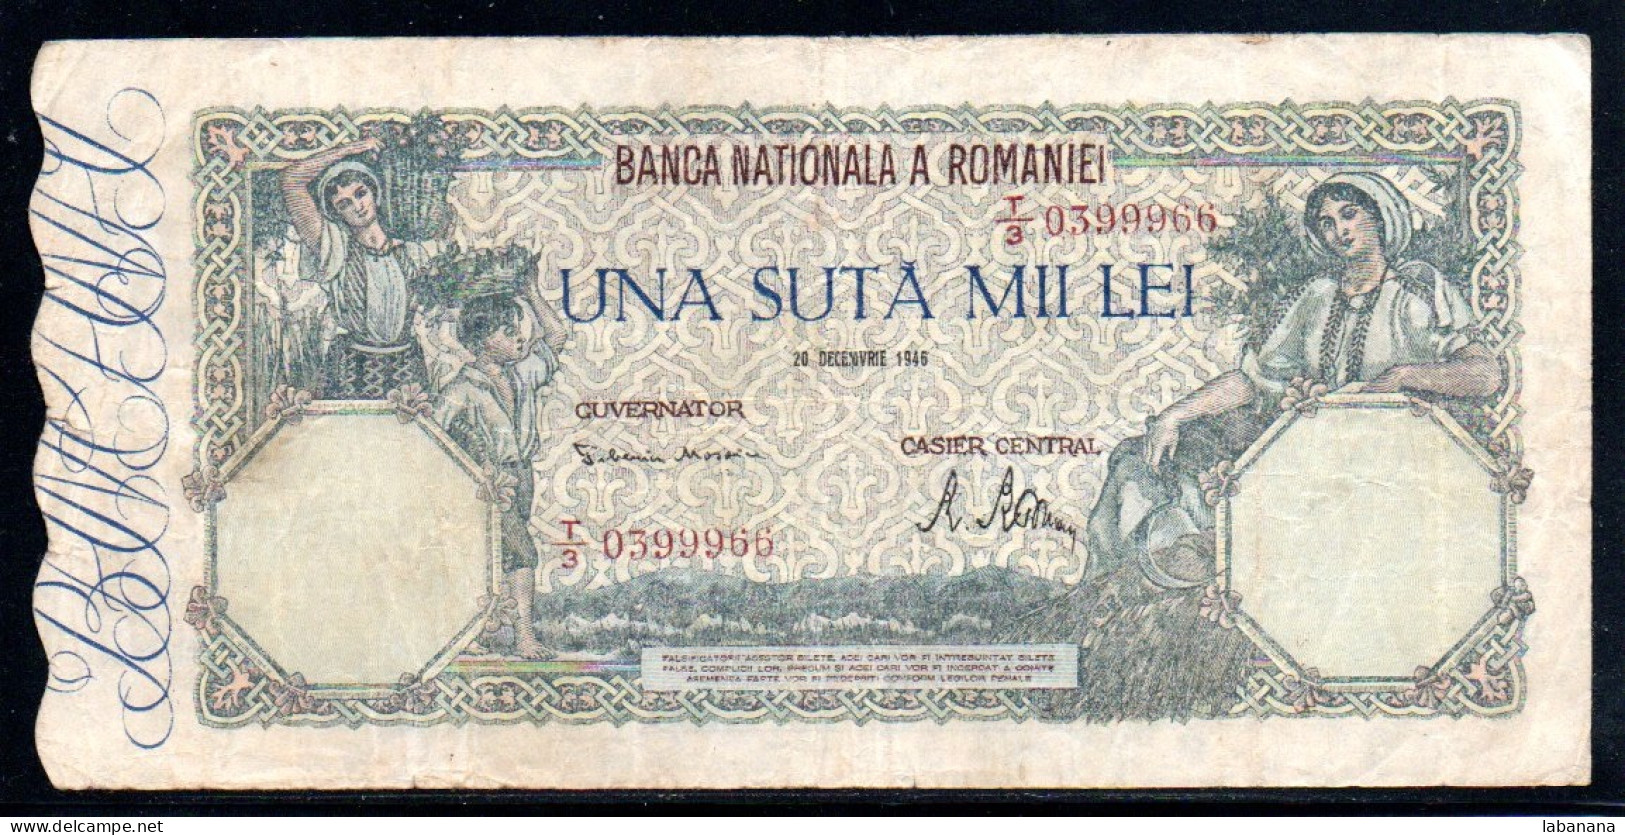 659-Roumanie 100 000 Lei 1945 T3 - Roemenië